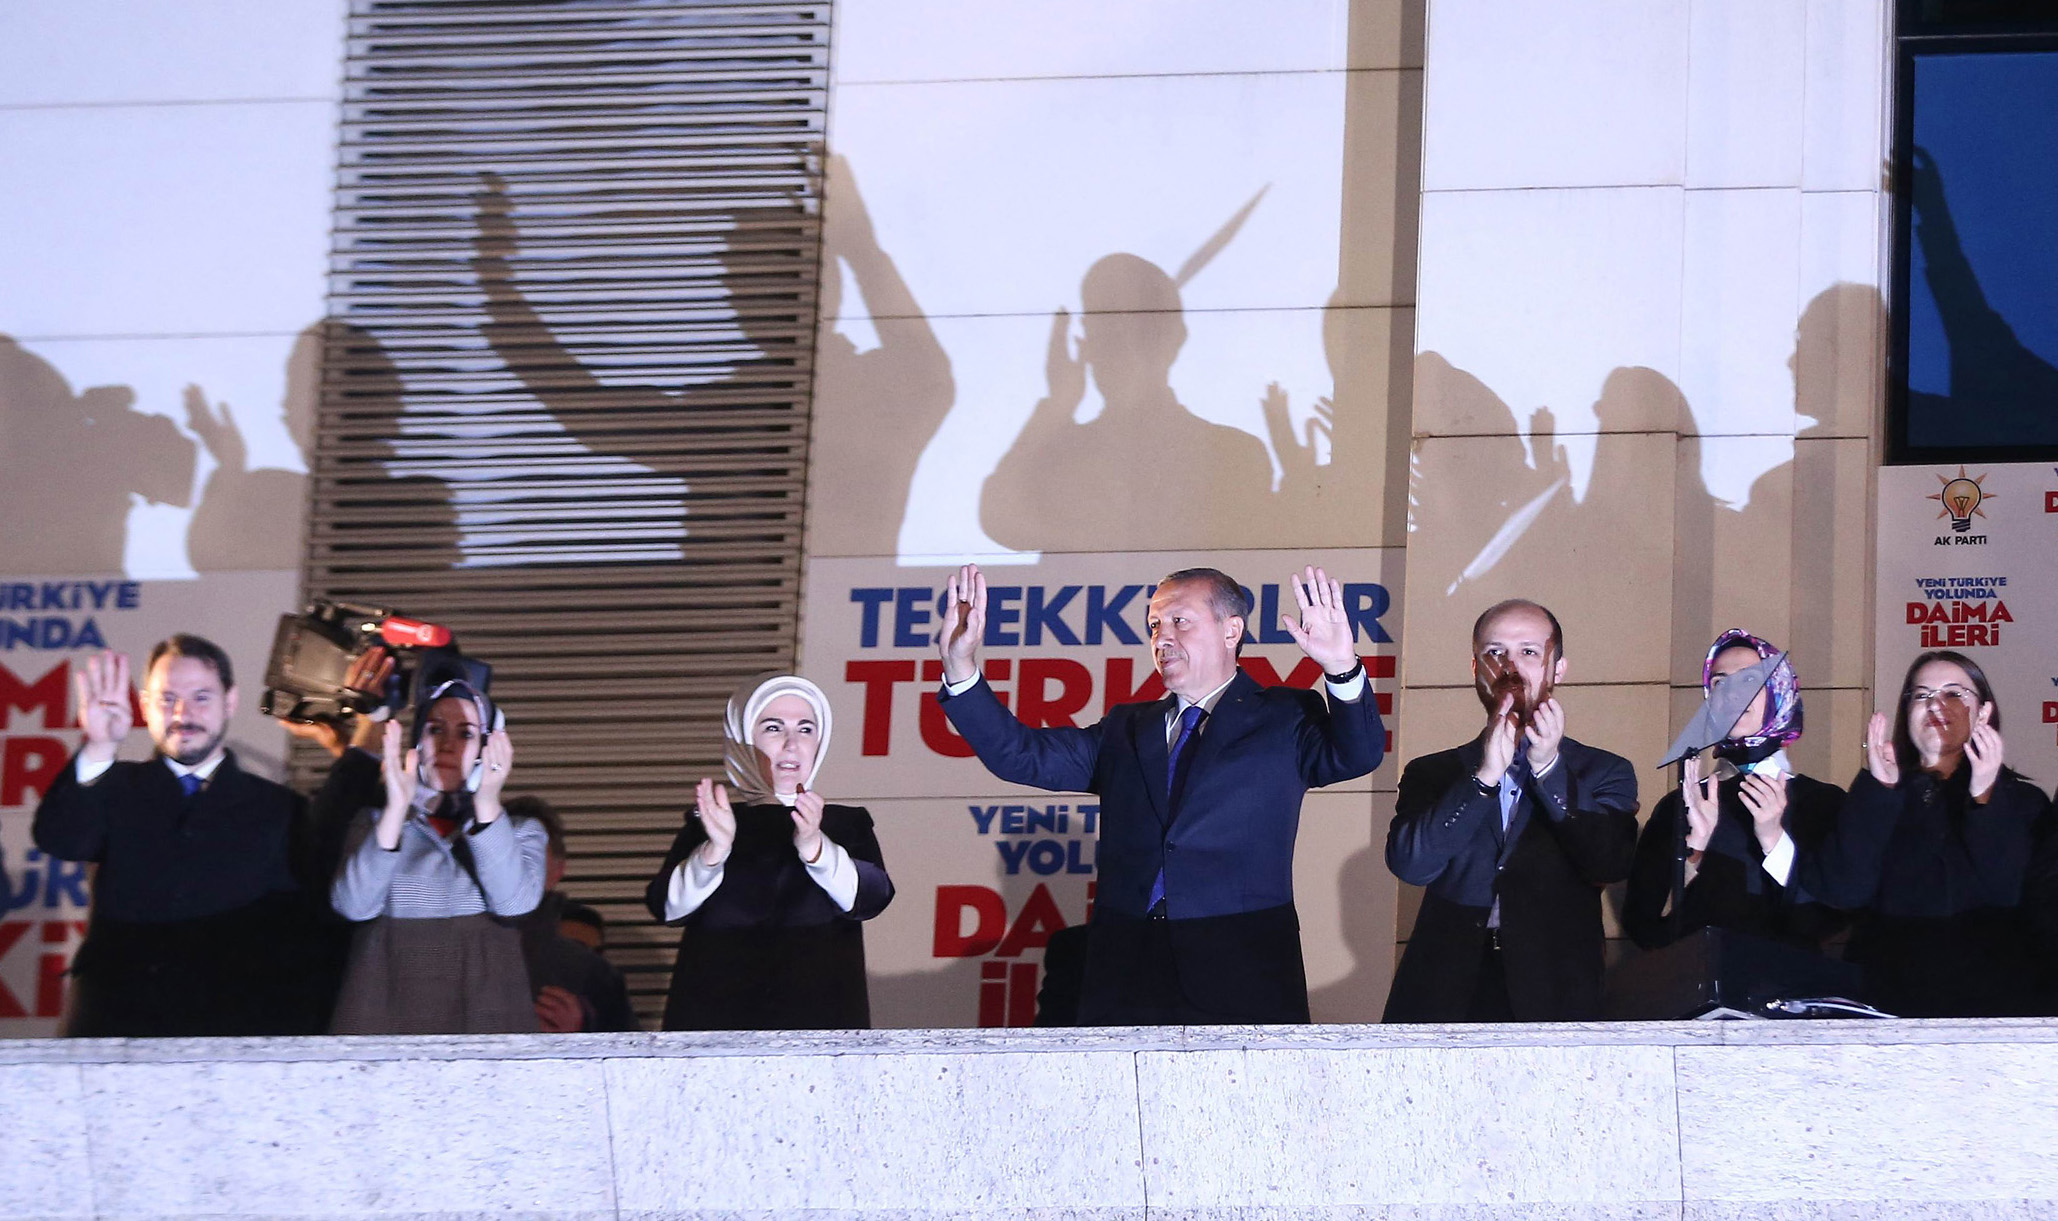 يقول خبراء إن إردوغان مستعد للتضحية بعلاقاته مع الحلفاء من أجل تحقيق مصالحه ورفع شعبيته